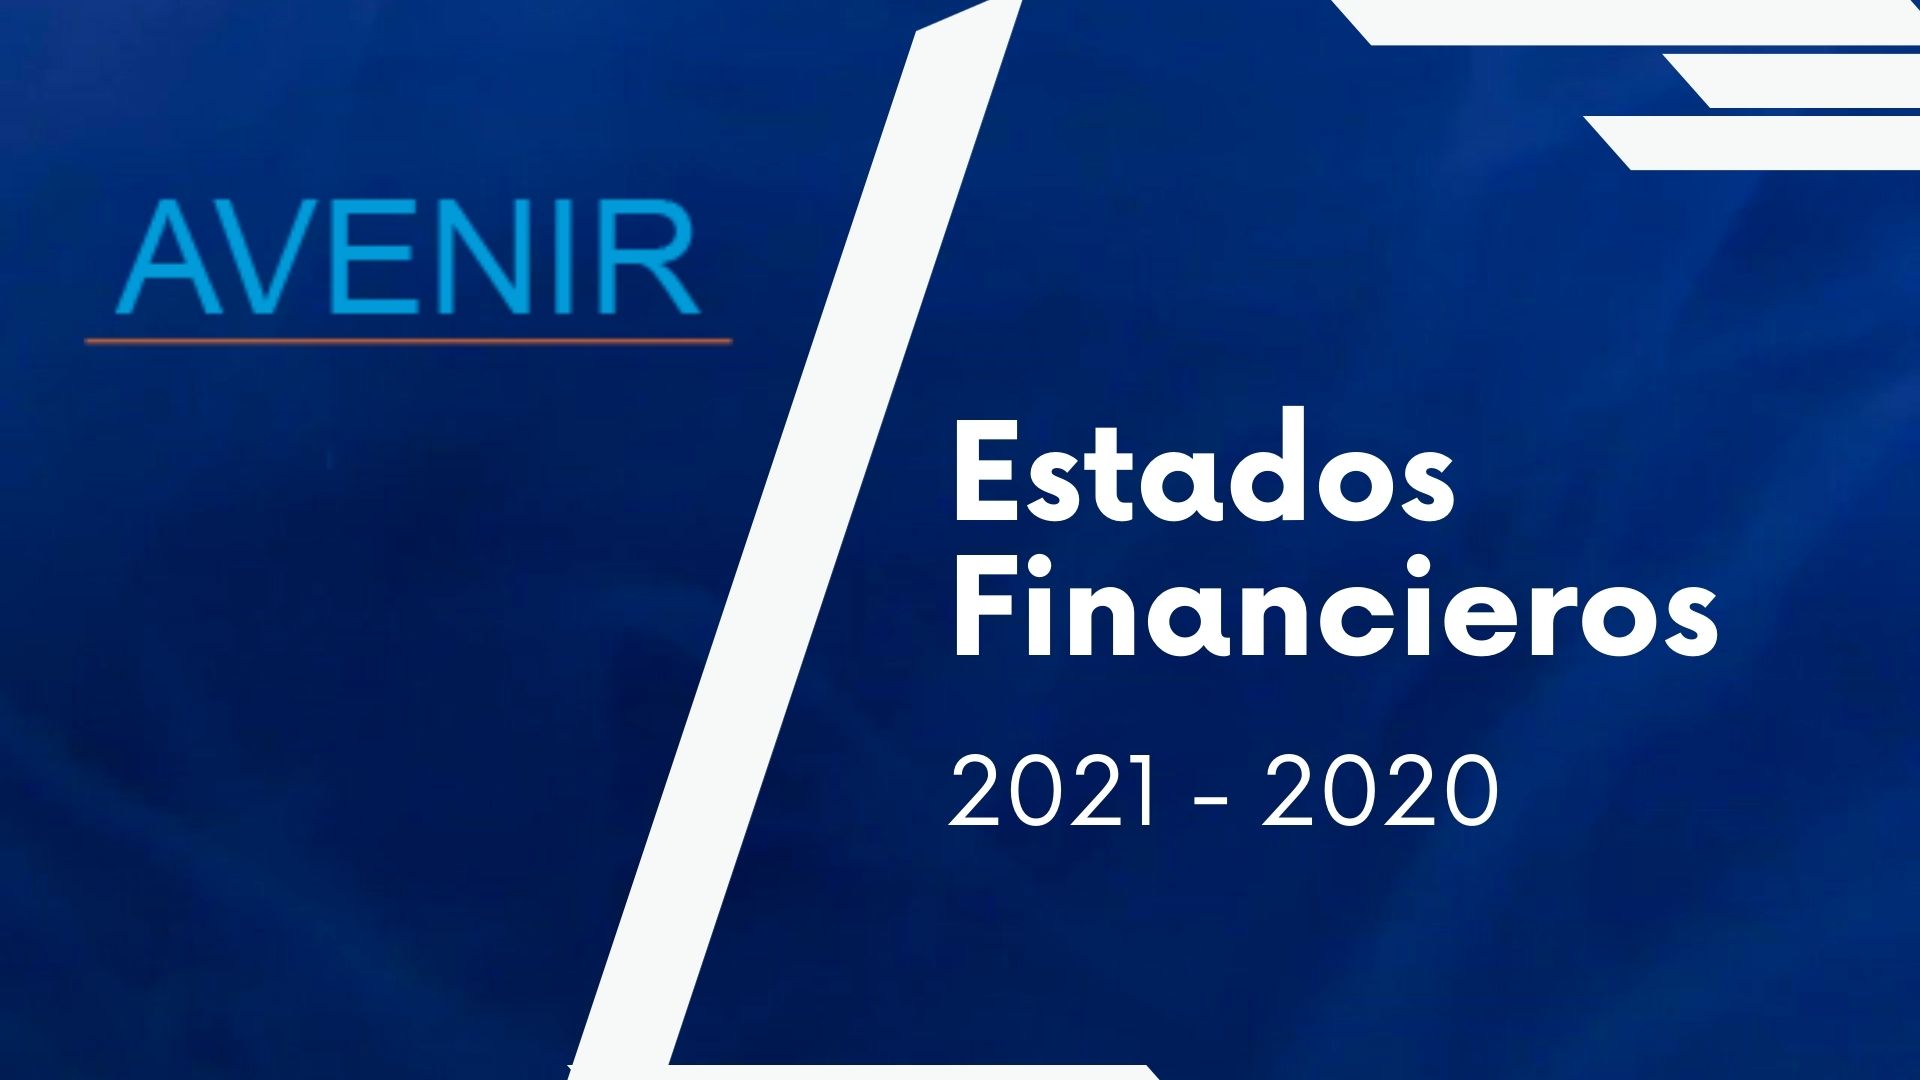 avenir-salud-contenido-estados-financieros-2021-2020